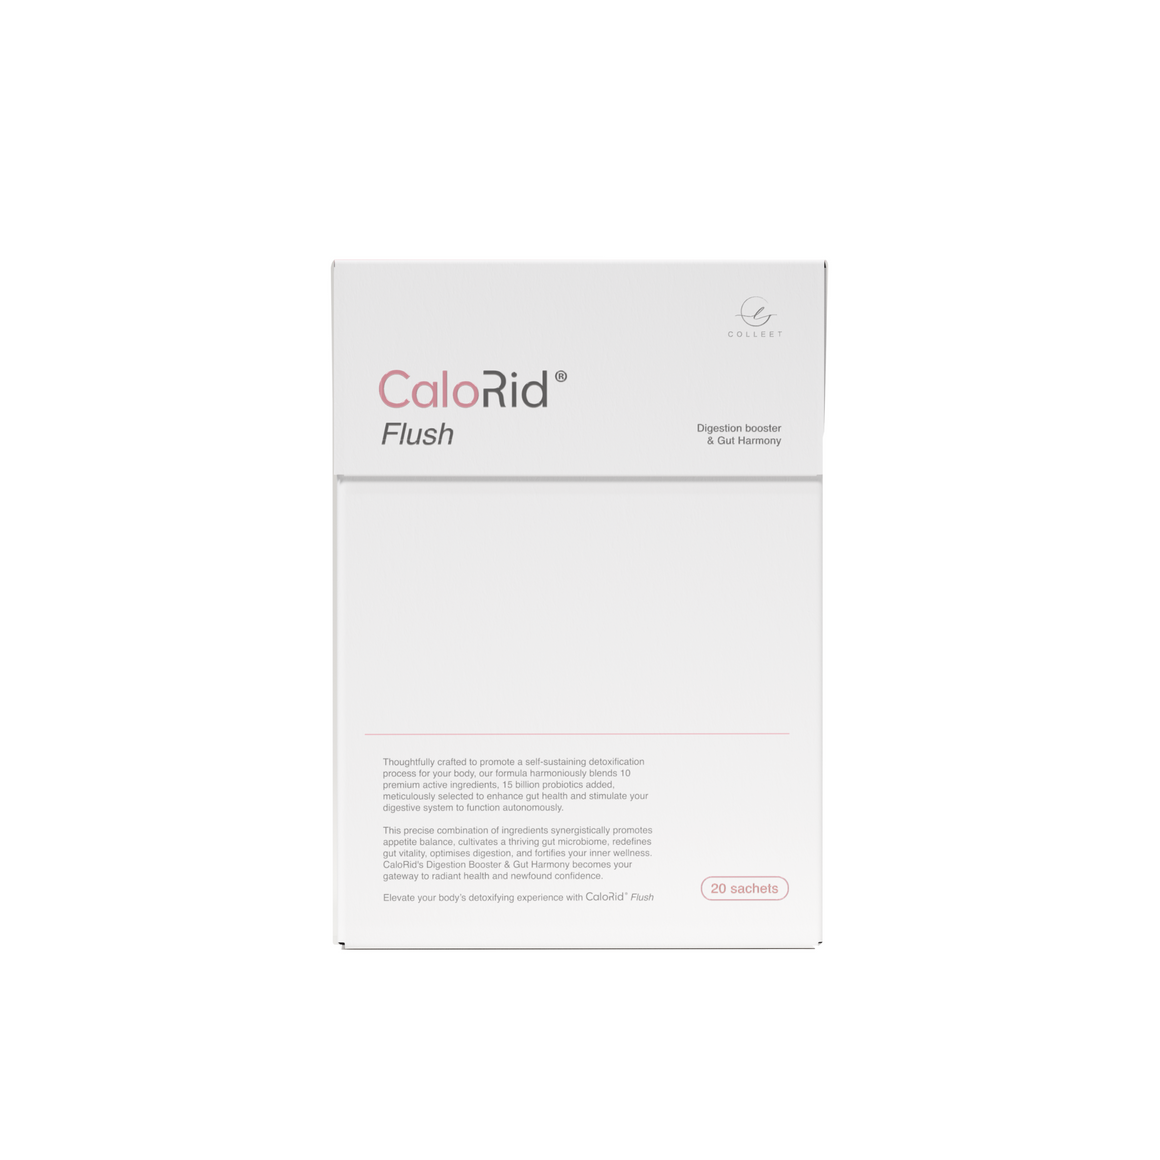 COLLEET CaloRid Flush Digestion Booster